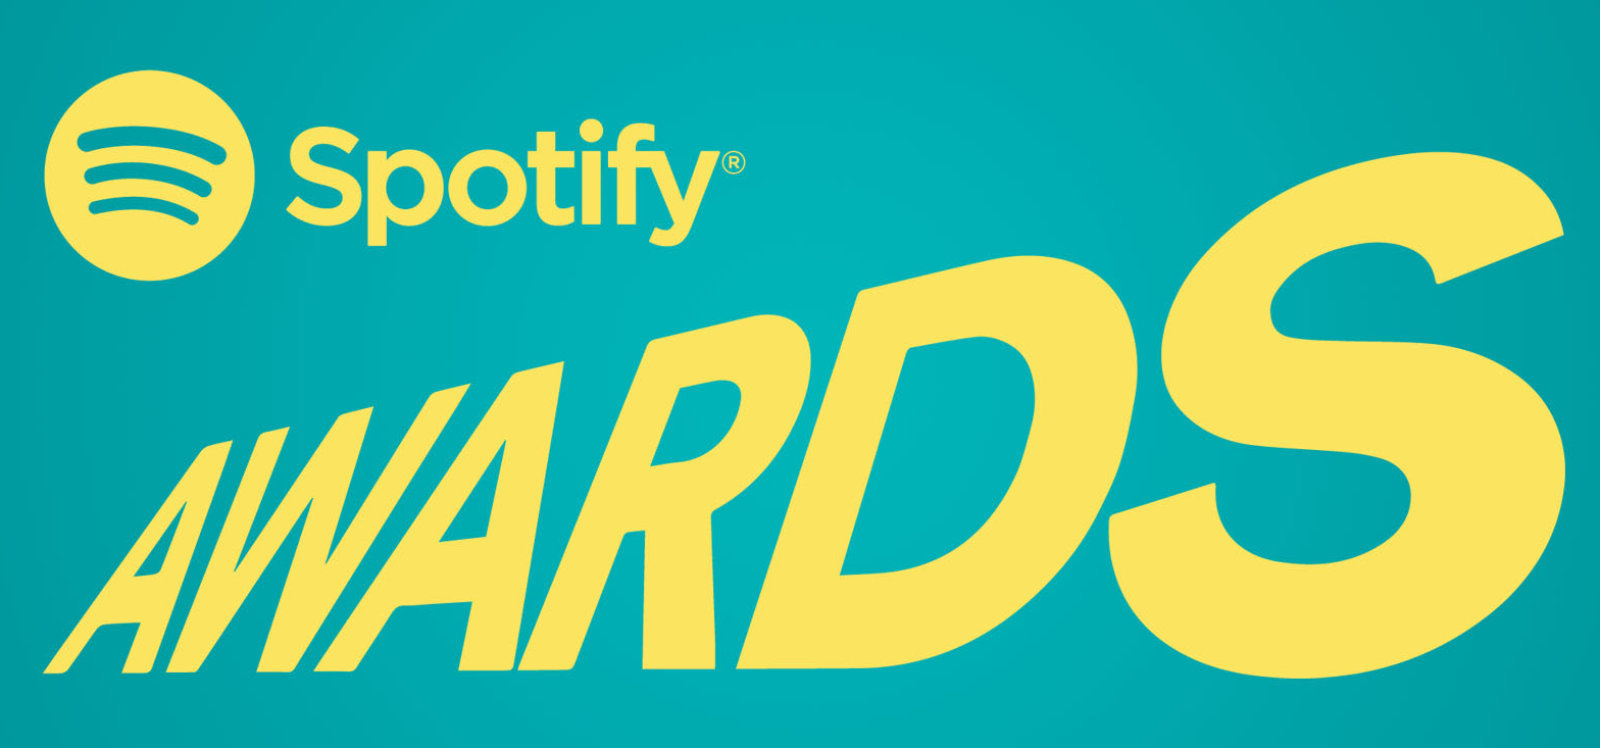 Spotify, kullanıcıların kazananı belirleyeceği ödül töreni düzenleyecek